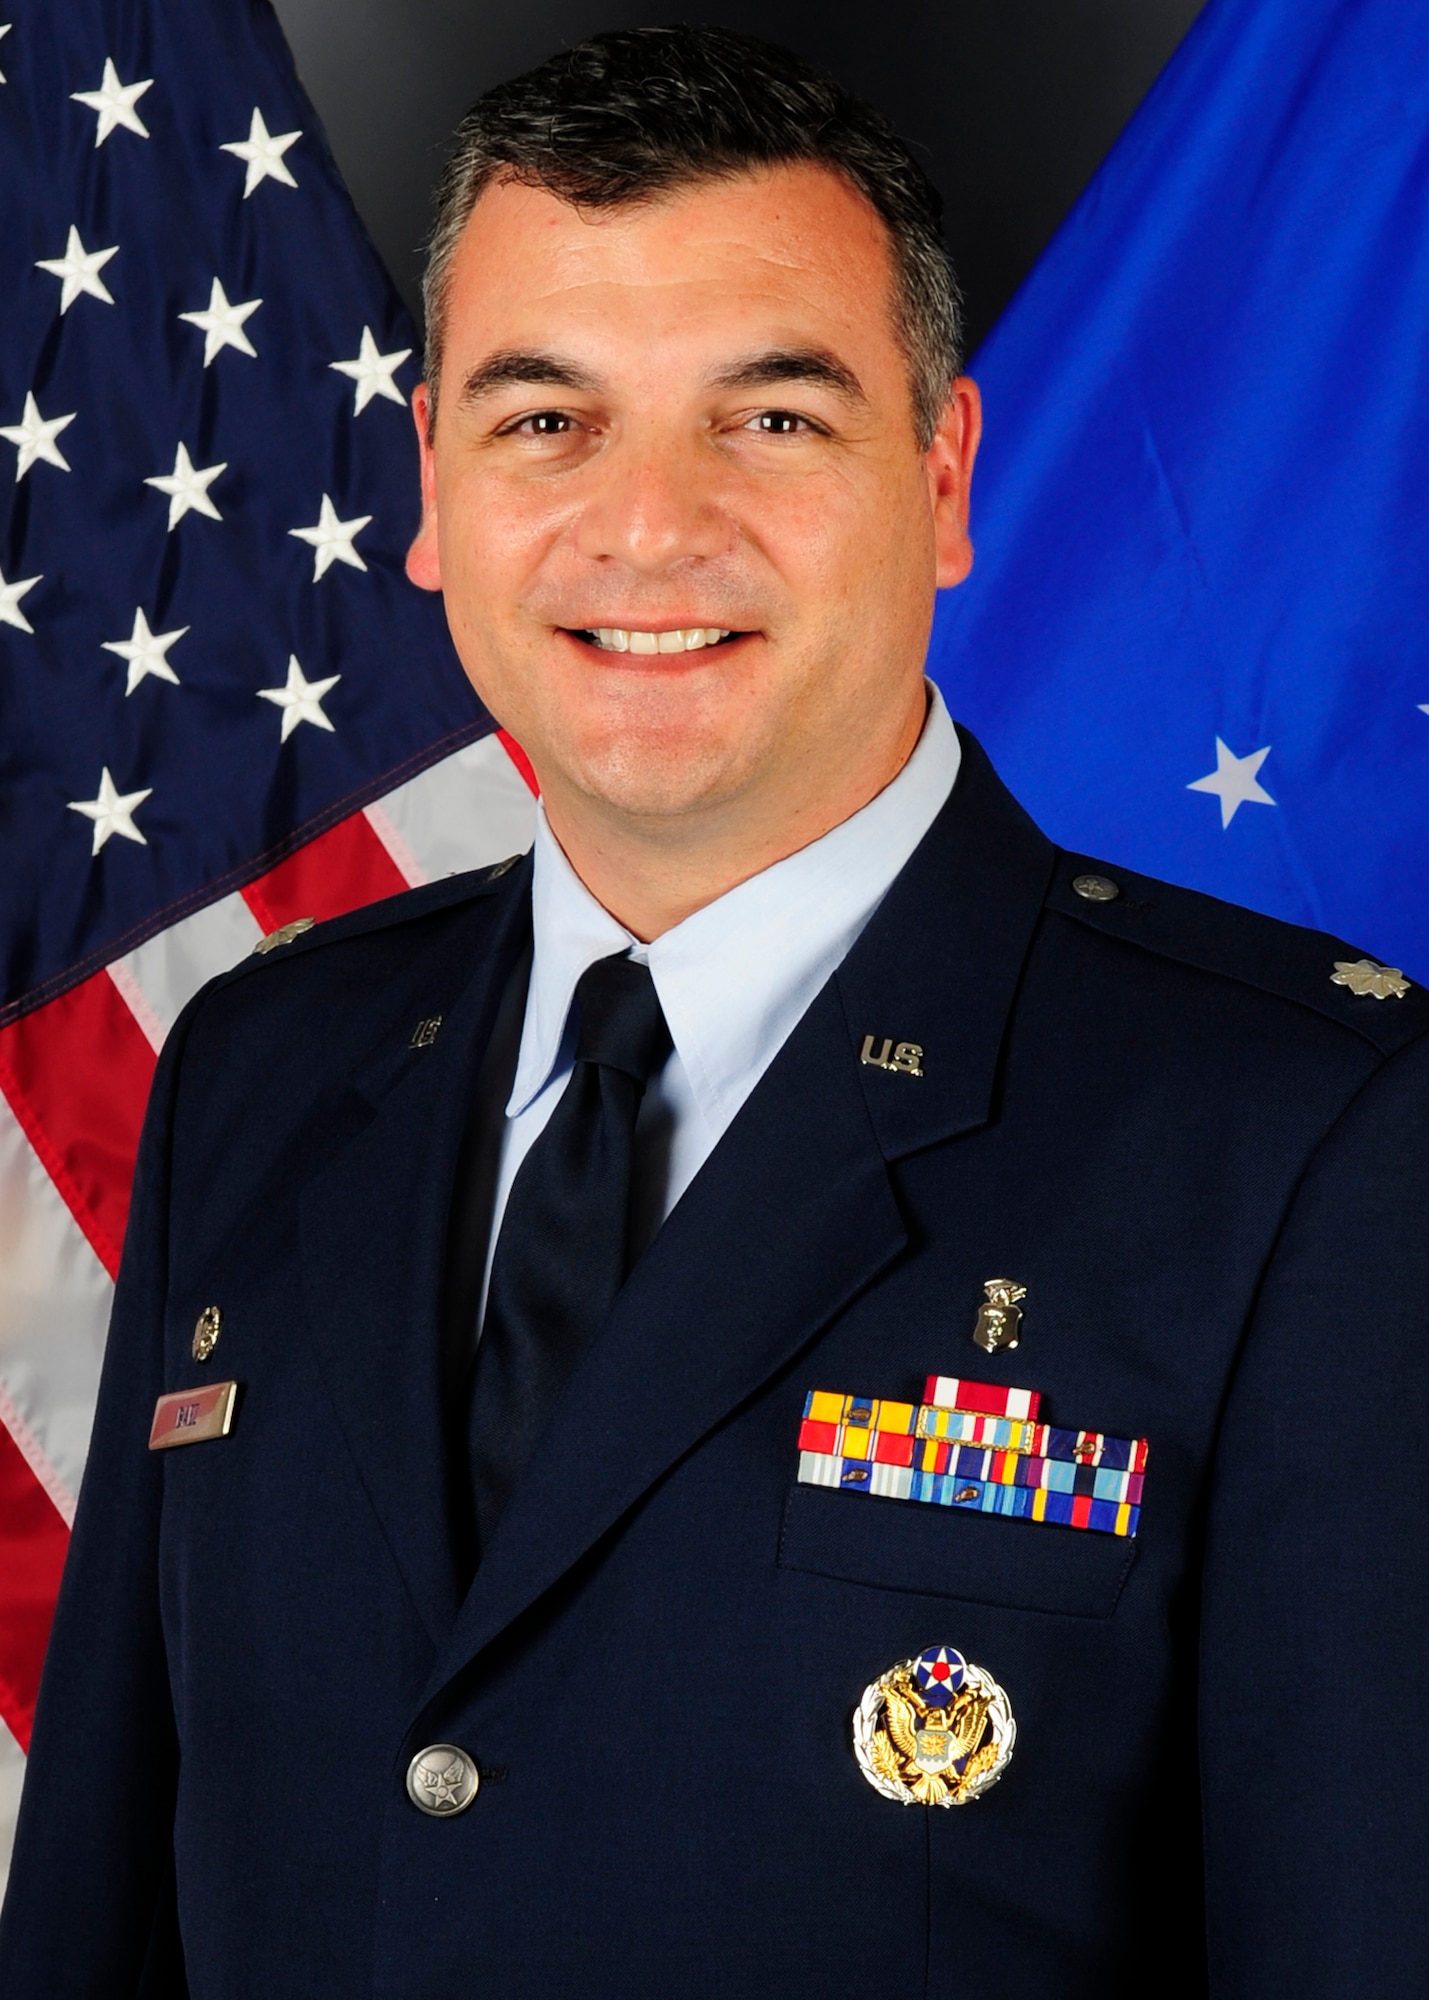 Lt. Col. William Baez